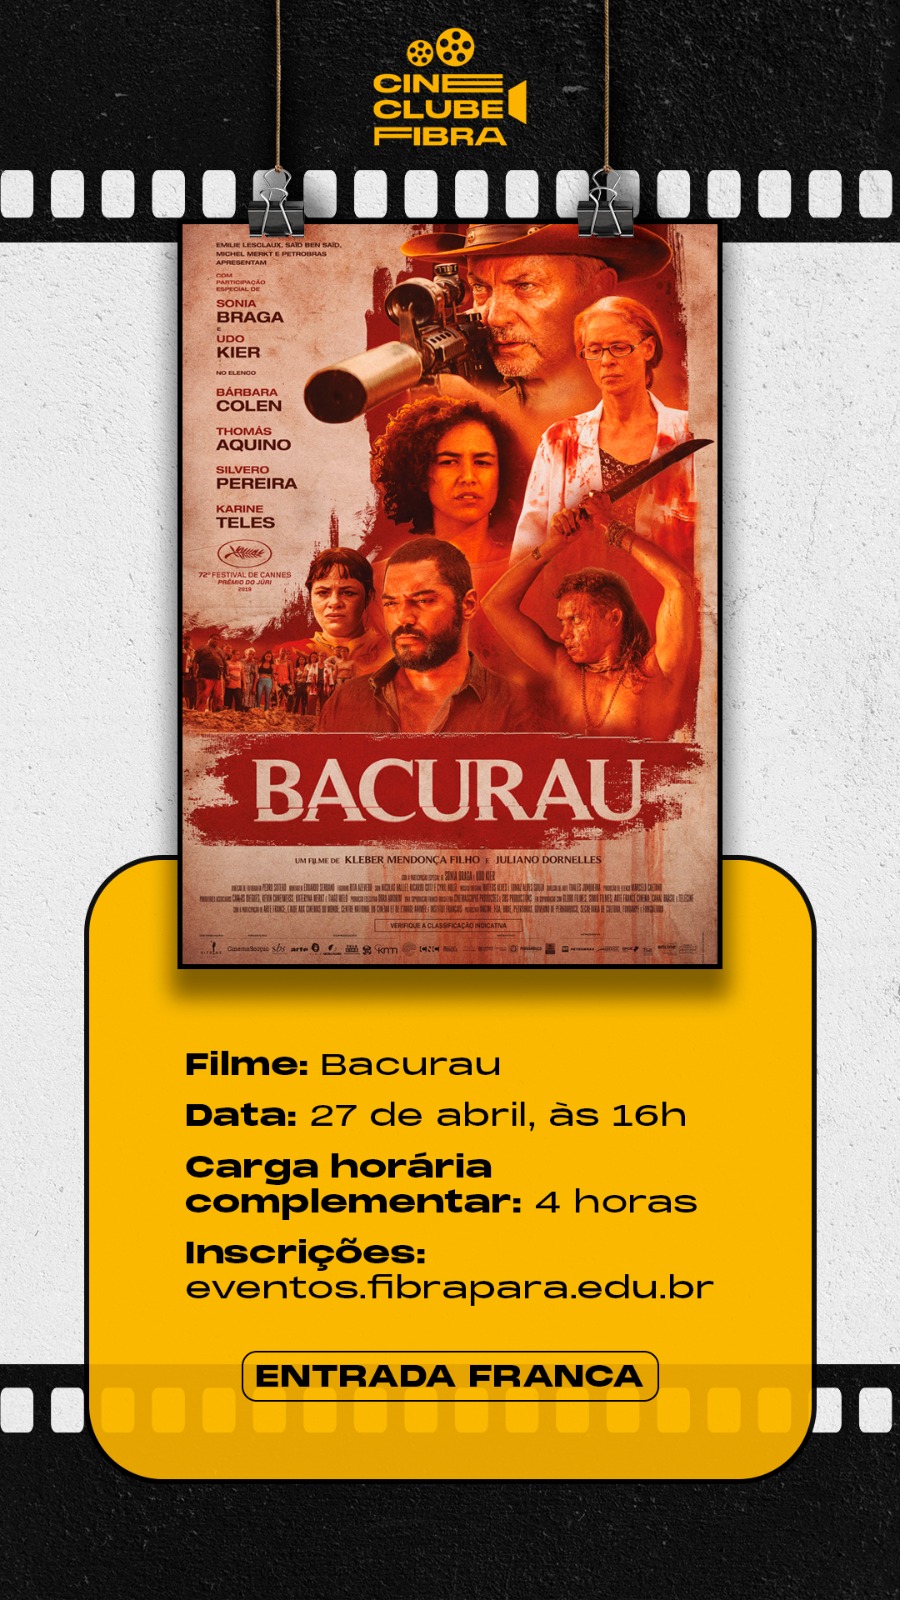 Cineclube Fibra - Bacurau